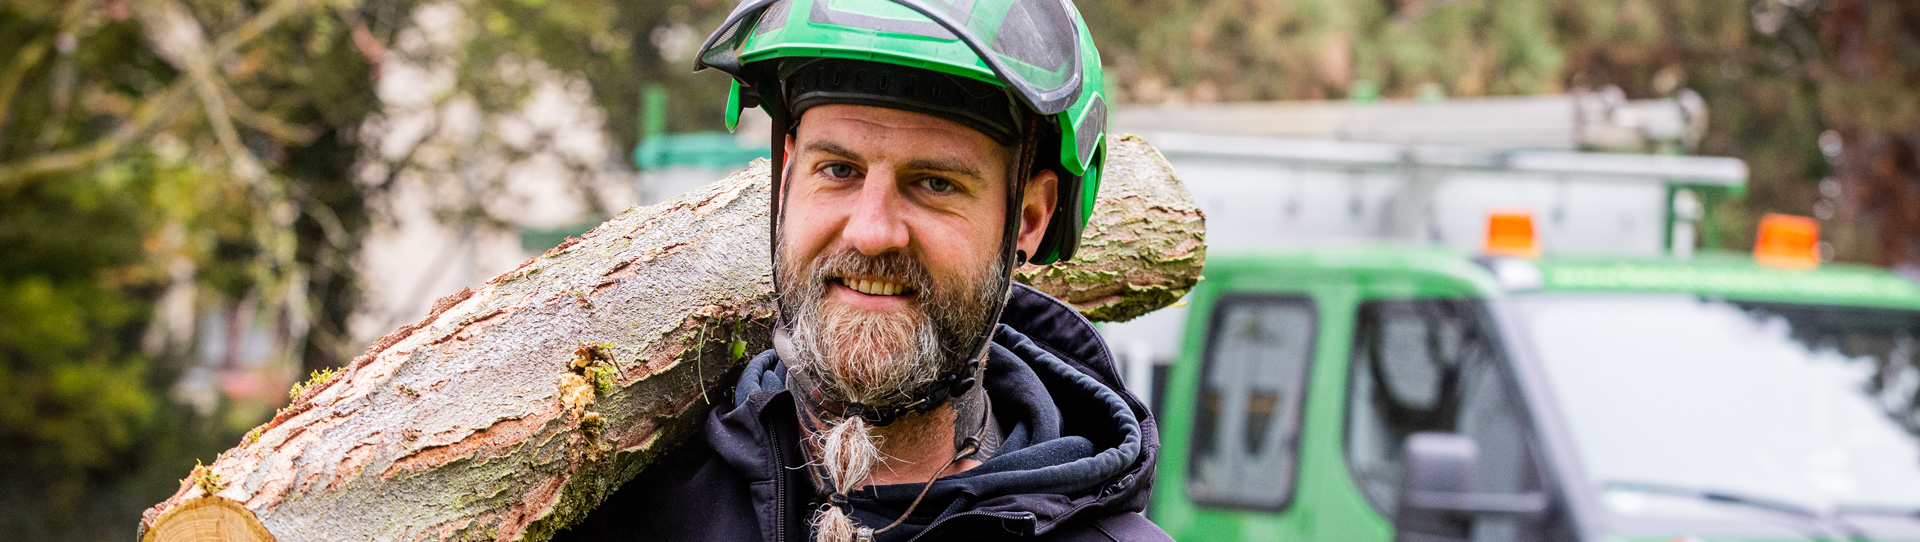 Baumpfleger trägt einen Baumstamm auf der Schulter. Im Hintergrund steht ein grünes Fahrzeug.